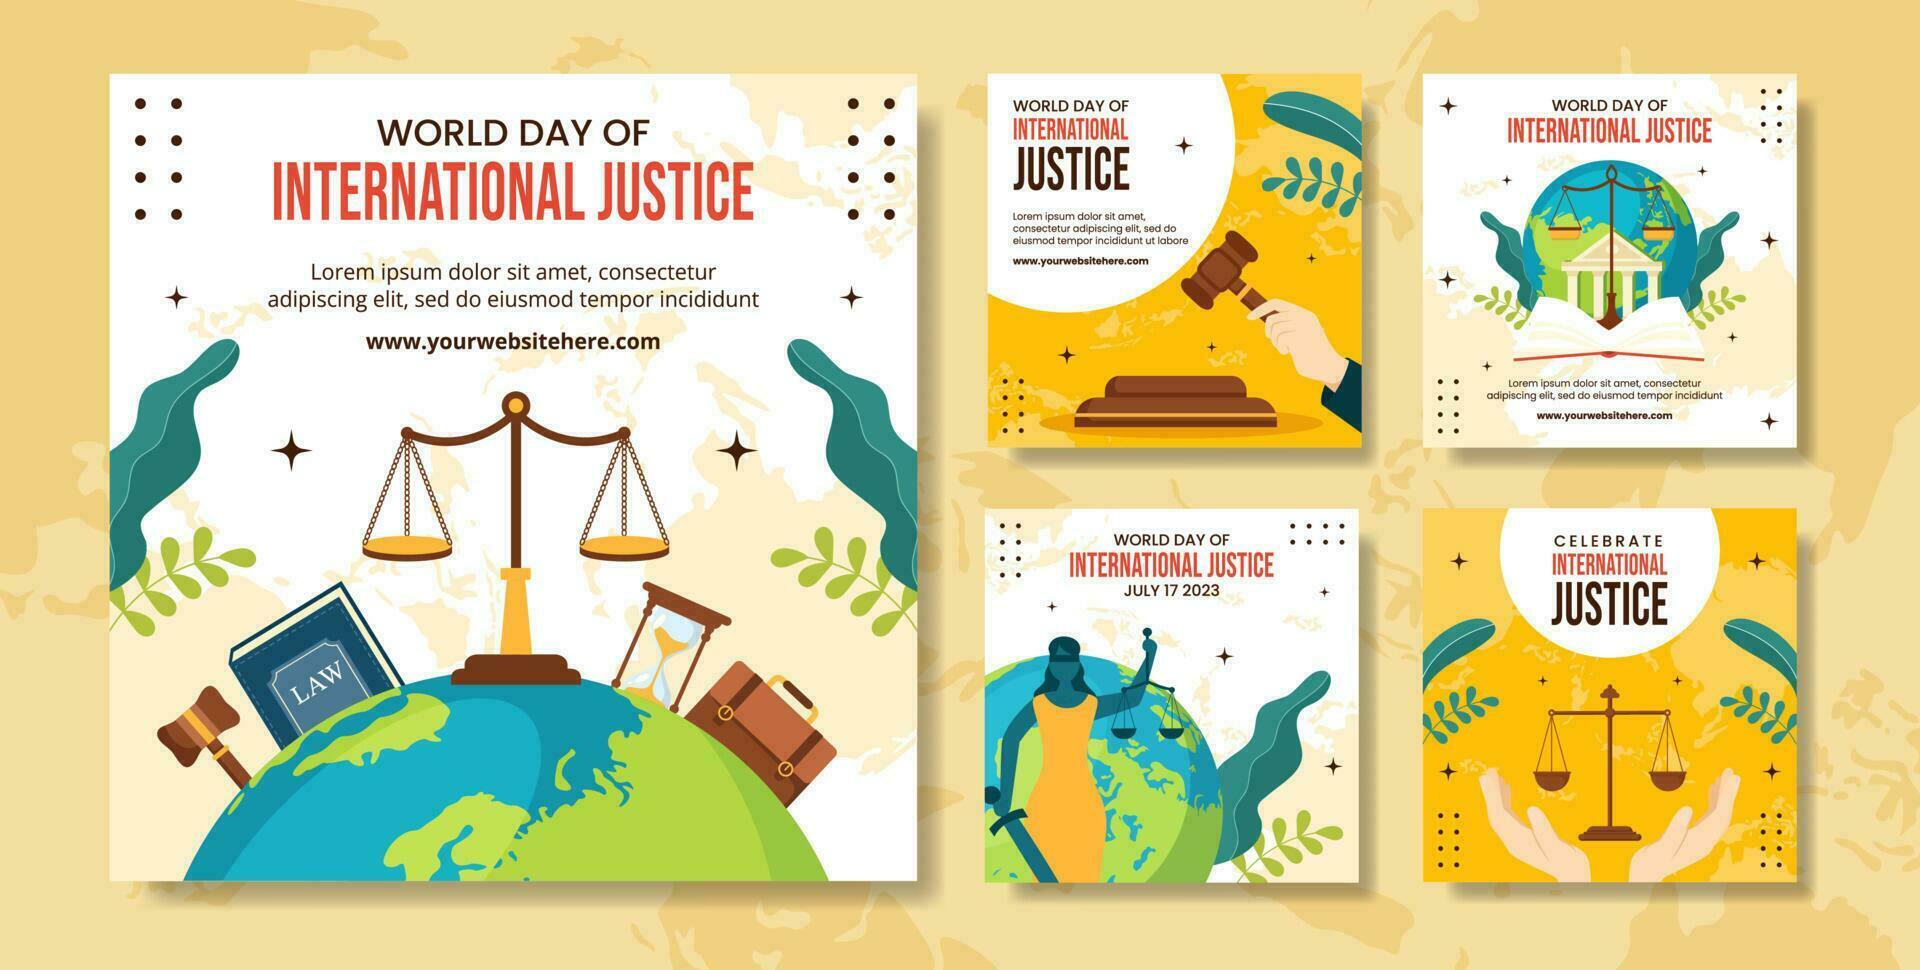 mundo día para internacional justicia social medios de comunicación enviar ilustración plano dibujos animados mano dibujado plantillas antecedentes vector